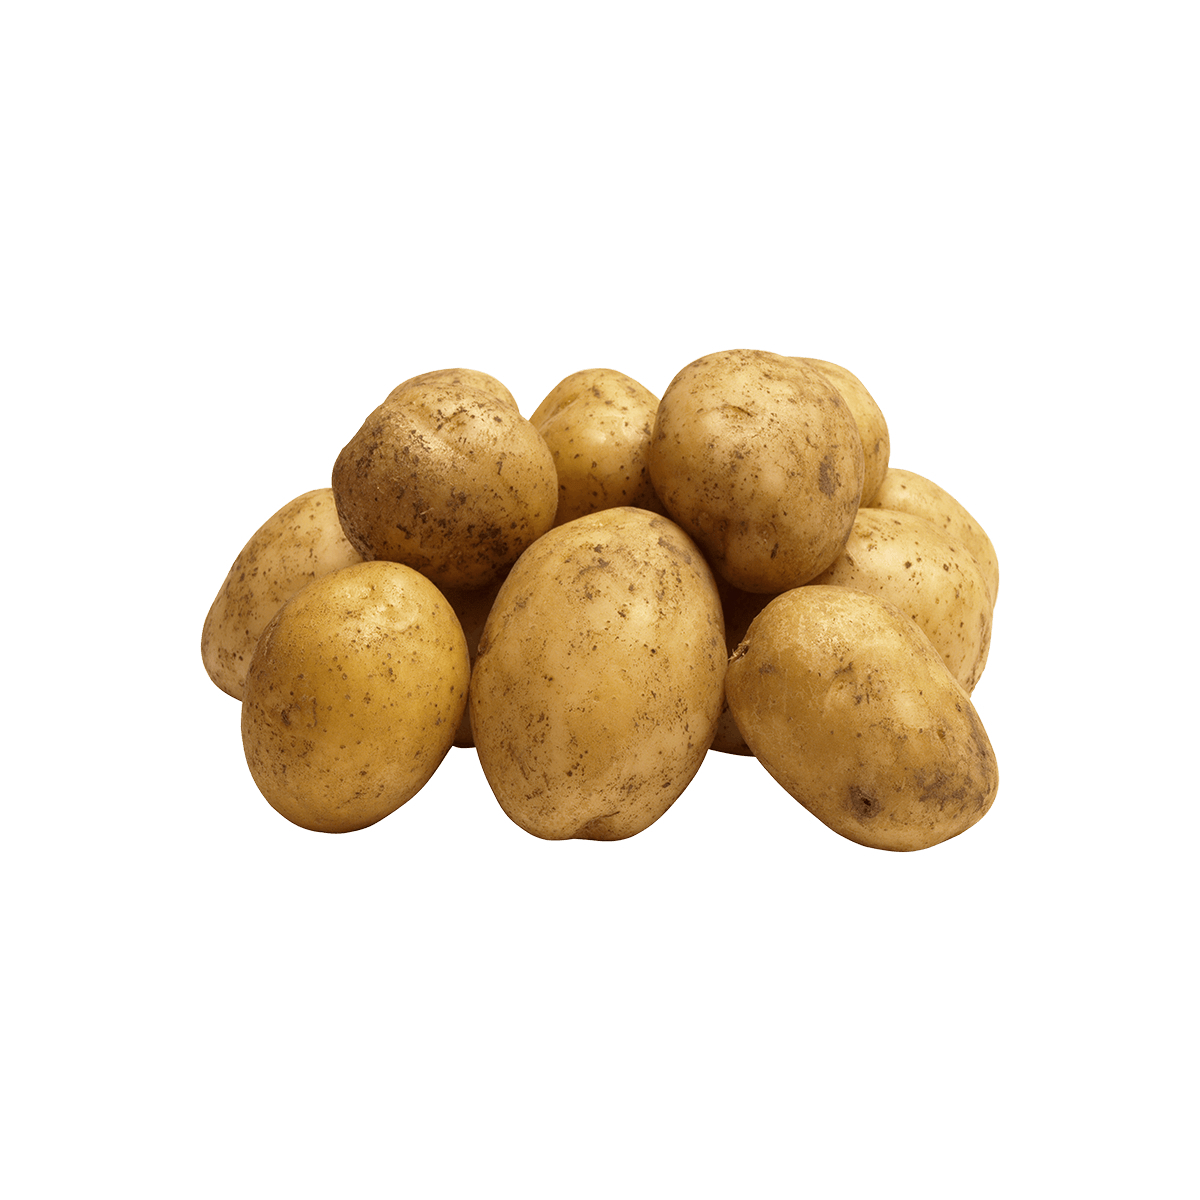 Картофель весовой